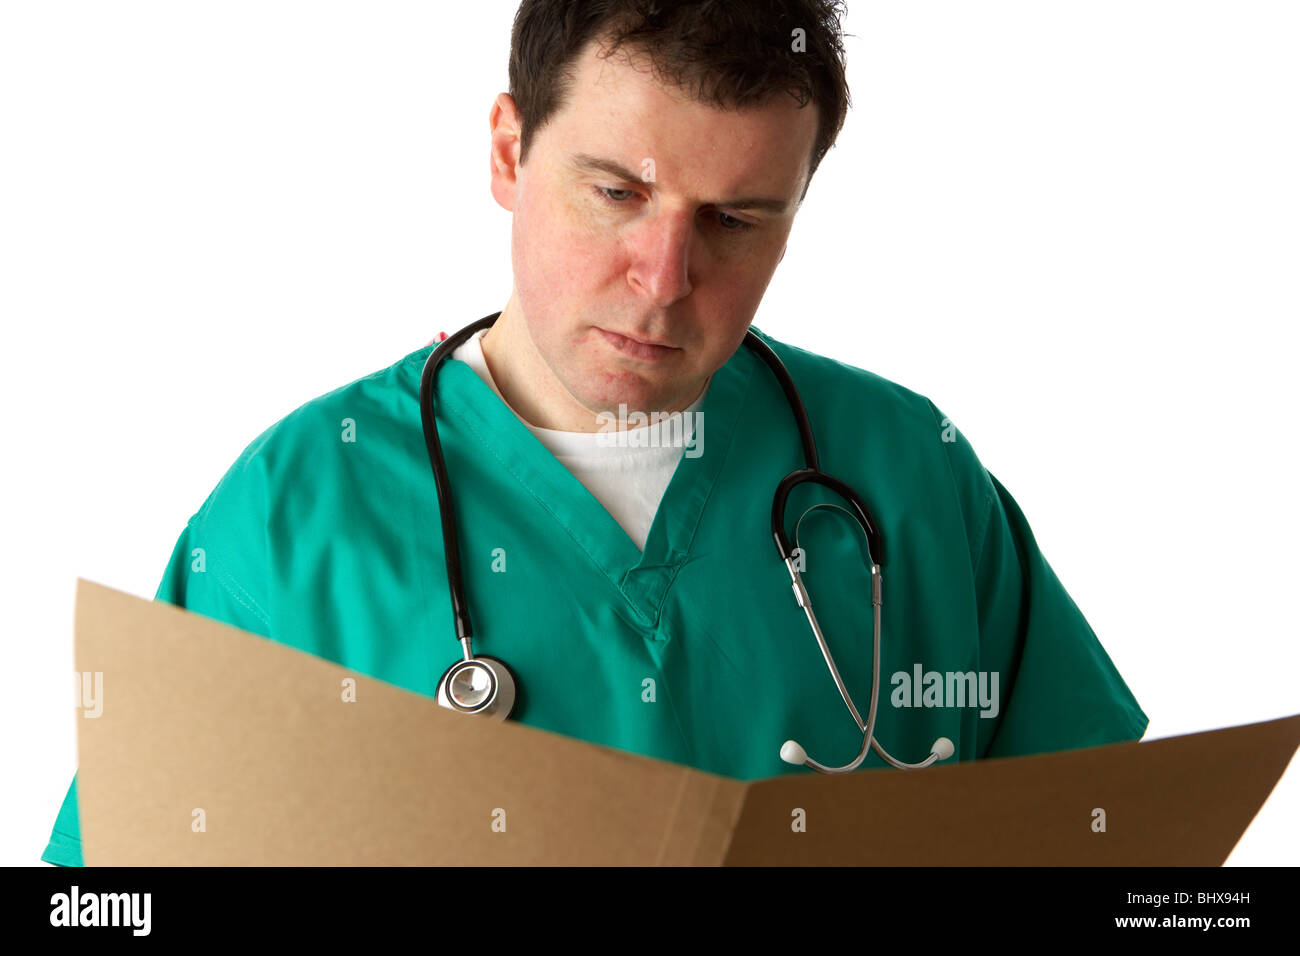 Mann trägt medizinische Peelings und Stethoskop Notenlesen in einem braunen Ordner Stockfoto